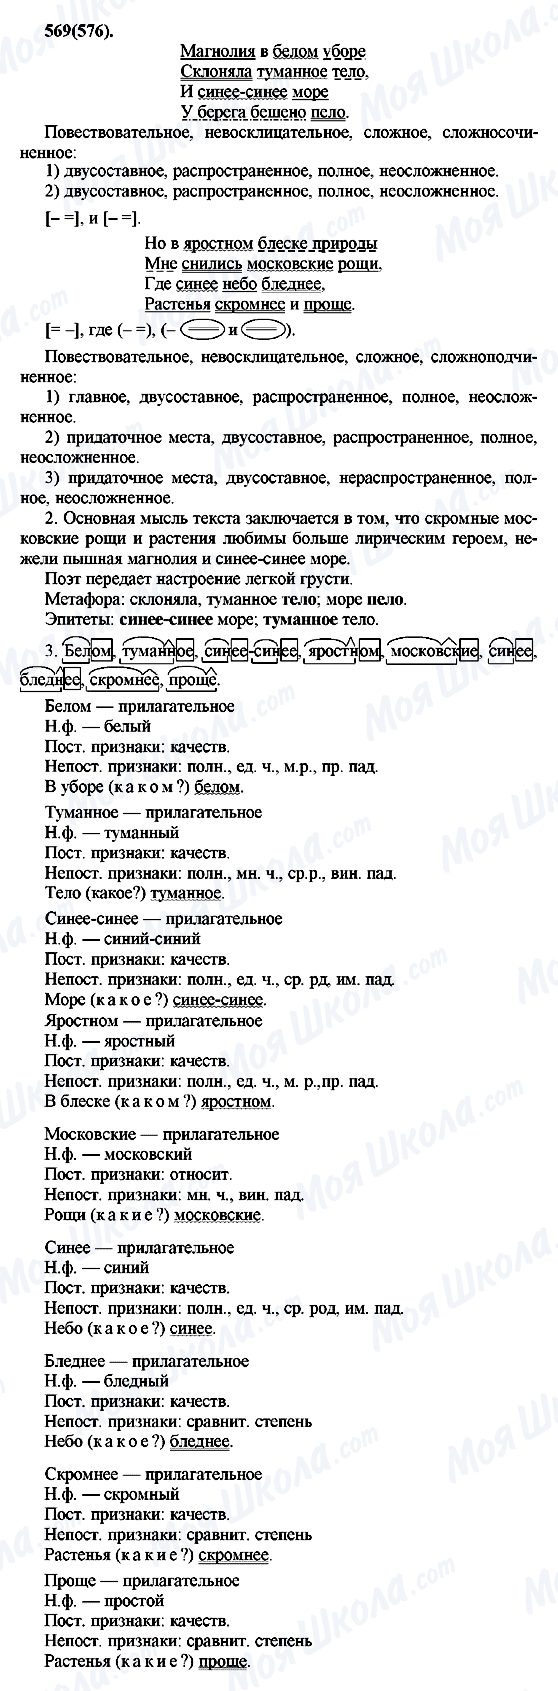 ГДЗ Російська мова 7 клас сторінка 569(576)